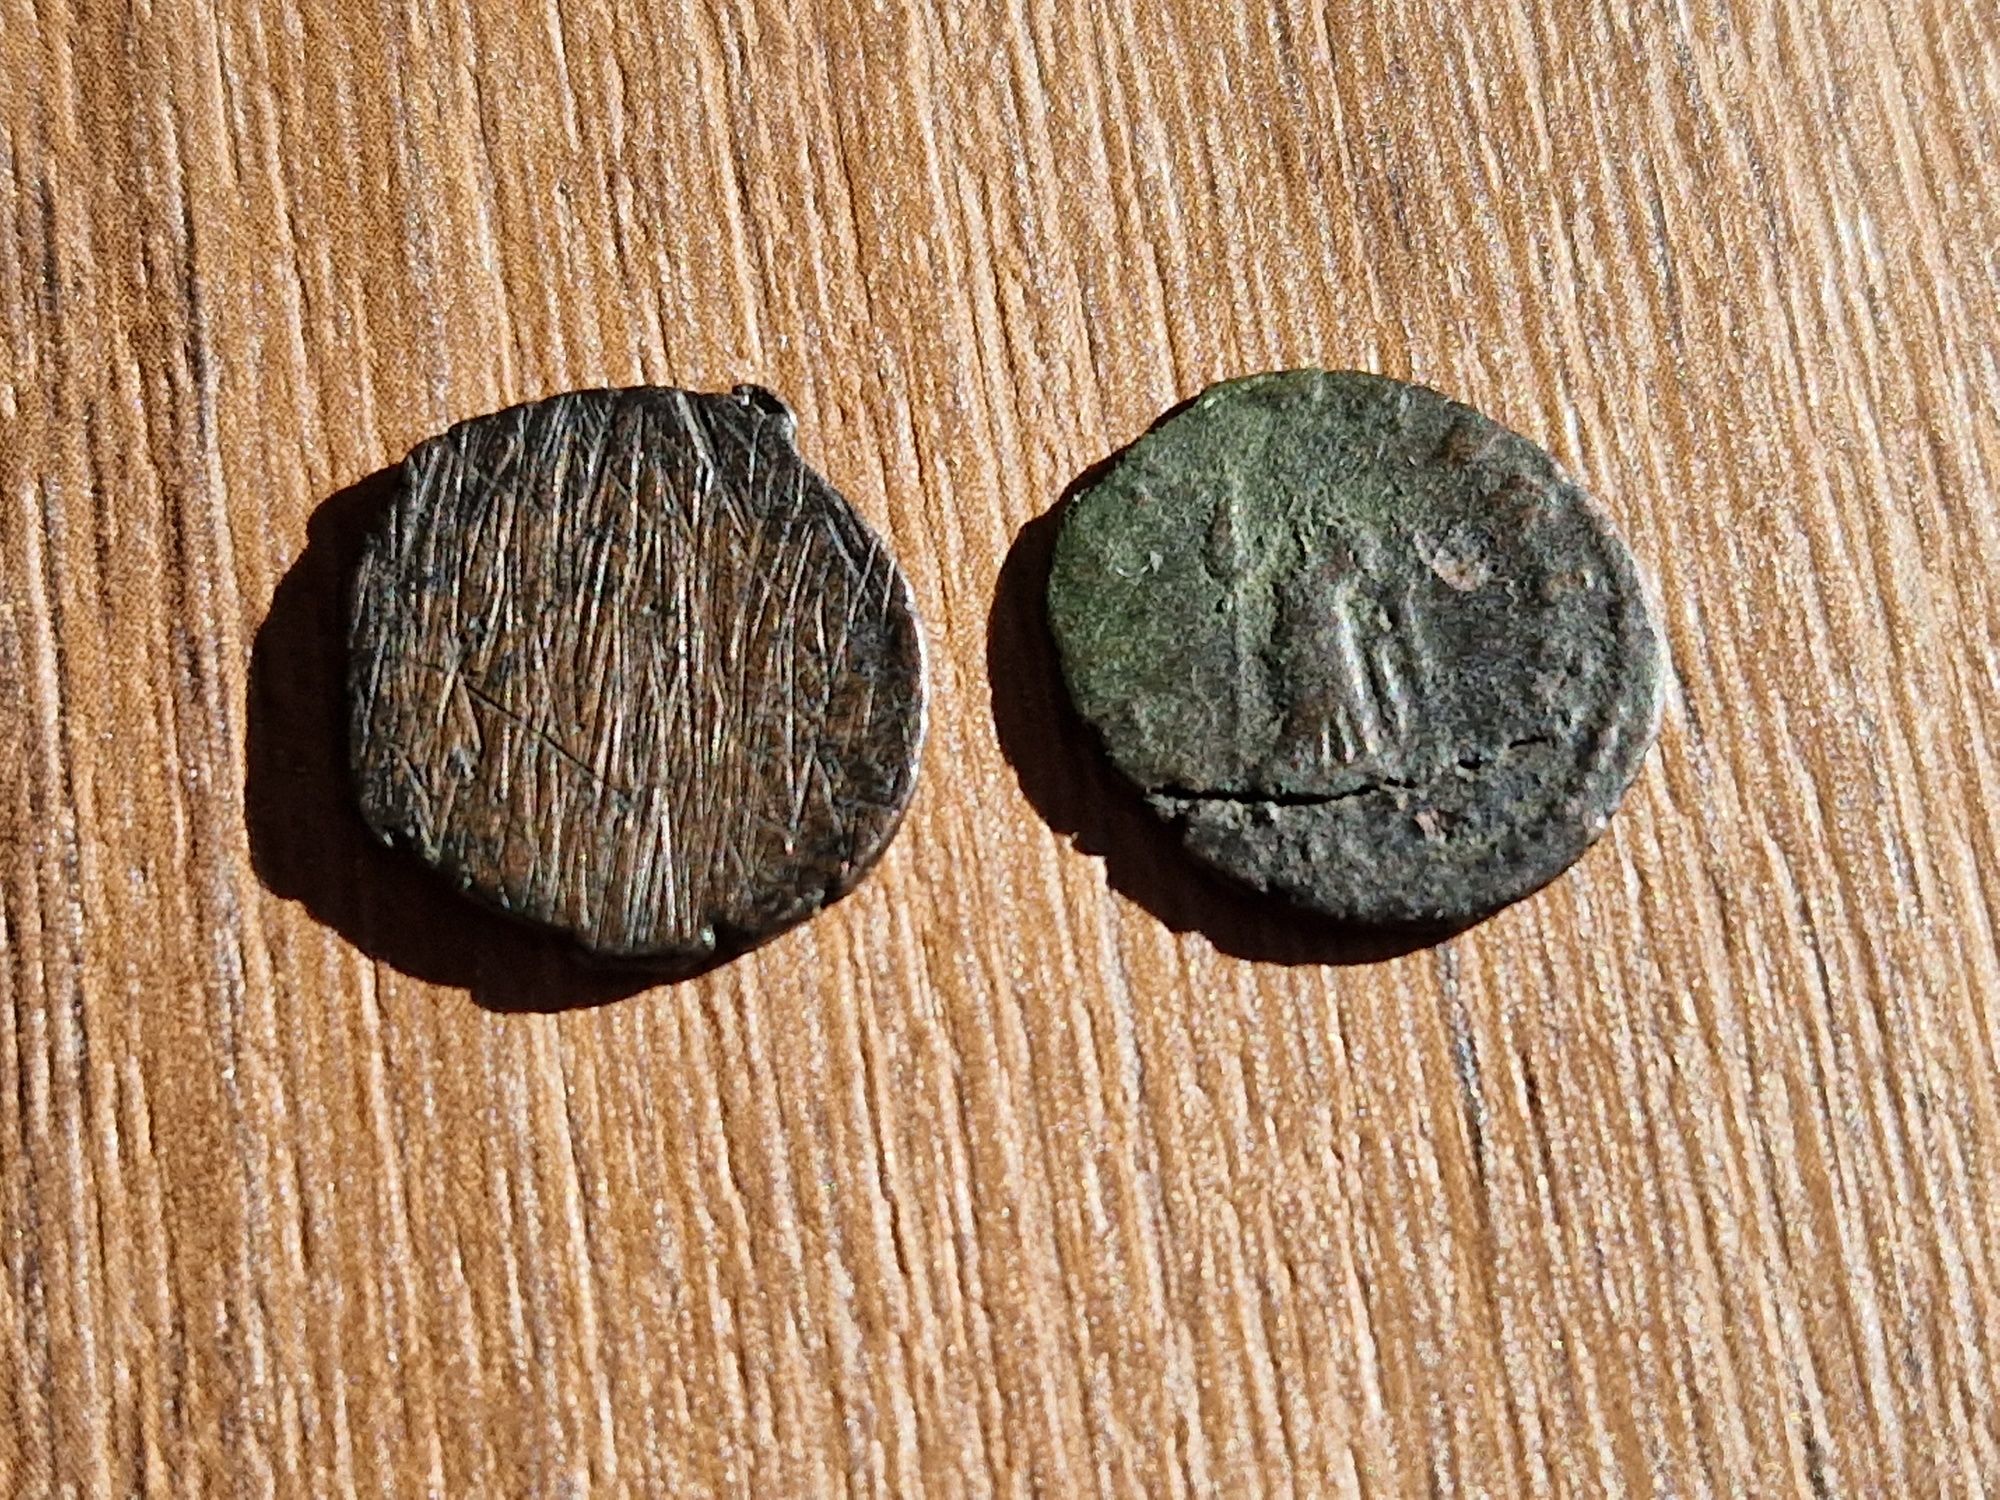 Lote de 2 moedas do império Romano